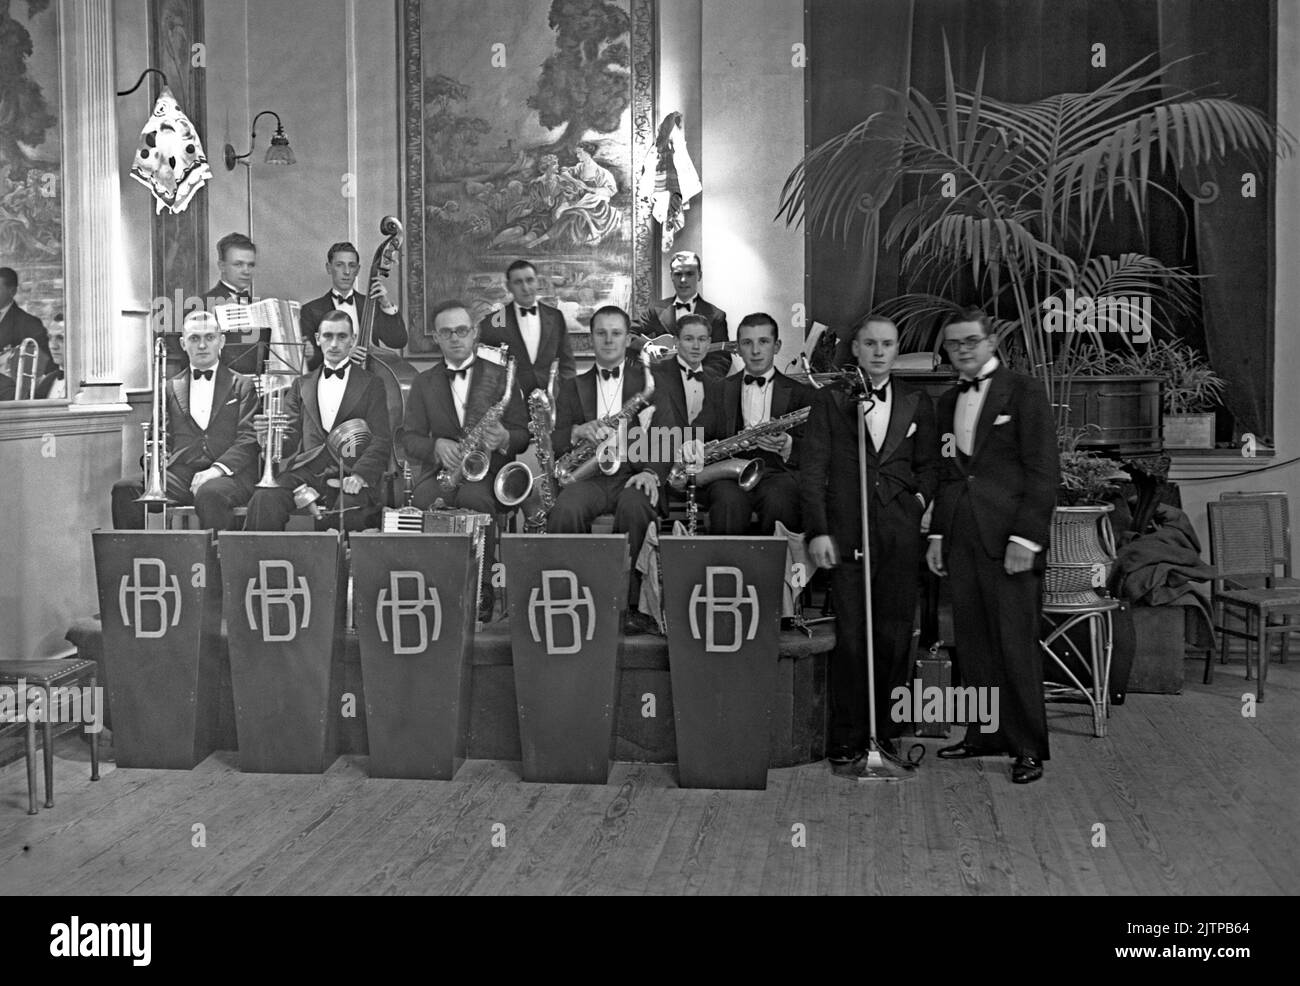 Eine britische Tanzband, das Harry Blake Orchestra, im November 1937 in den Portman Rooms, Baker Street, London, Großbritannien. Mit 12 Mitgliedern war dies eine beträchtliche Band und, für die Zeit ungewöhnlich, umfasste einen Bassisten und Gitarristen. Blake wird rechts fotografiert. Frühe Tanz- und Swing-Bands hatten ihre Blütezeit in Großbritannien während der Jahre 1920s–30s. Bands spielten in Tanzsälen und Hotelballsälen. Sie spielten melodische, gute-Zeit-Musik und einzelne Spieler spielten in mehreren Bands. Dieses Bild stammt aus einem alten Glas-Negativ – einem Vintage-Foto aus dem Jahr 1930s. Stockfoto